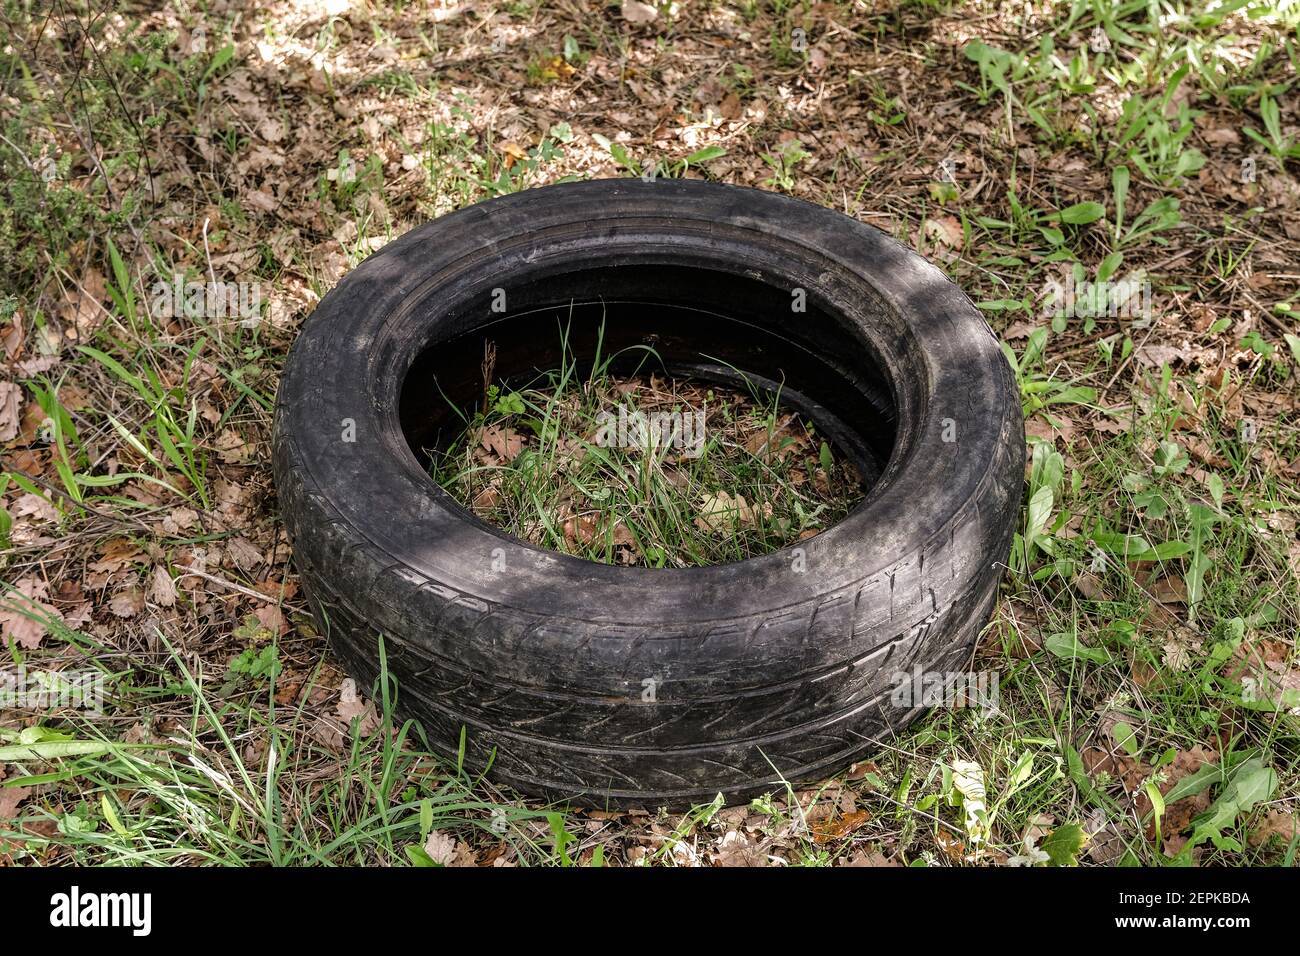 Vieux pneu de voiture en caoutchouc usagé jeté sur l'écosystème forestier brut, environnemental pollution Banque D'Images